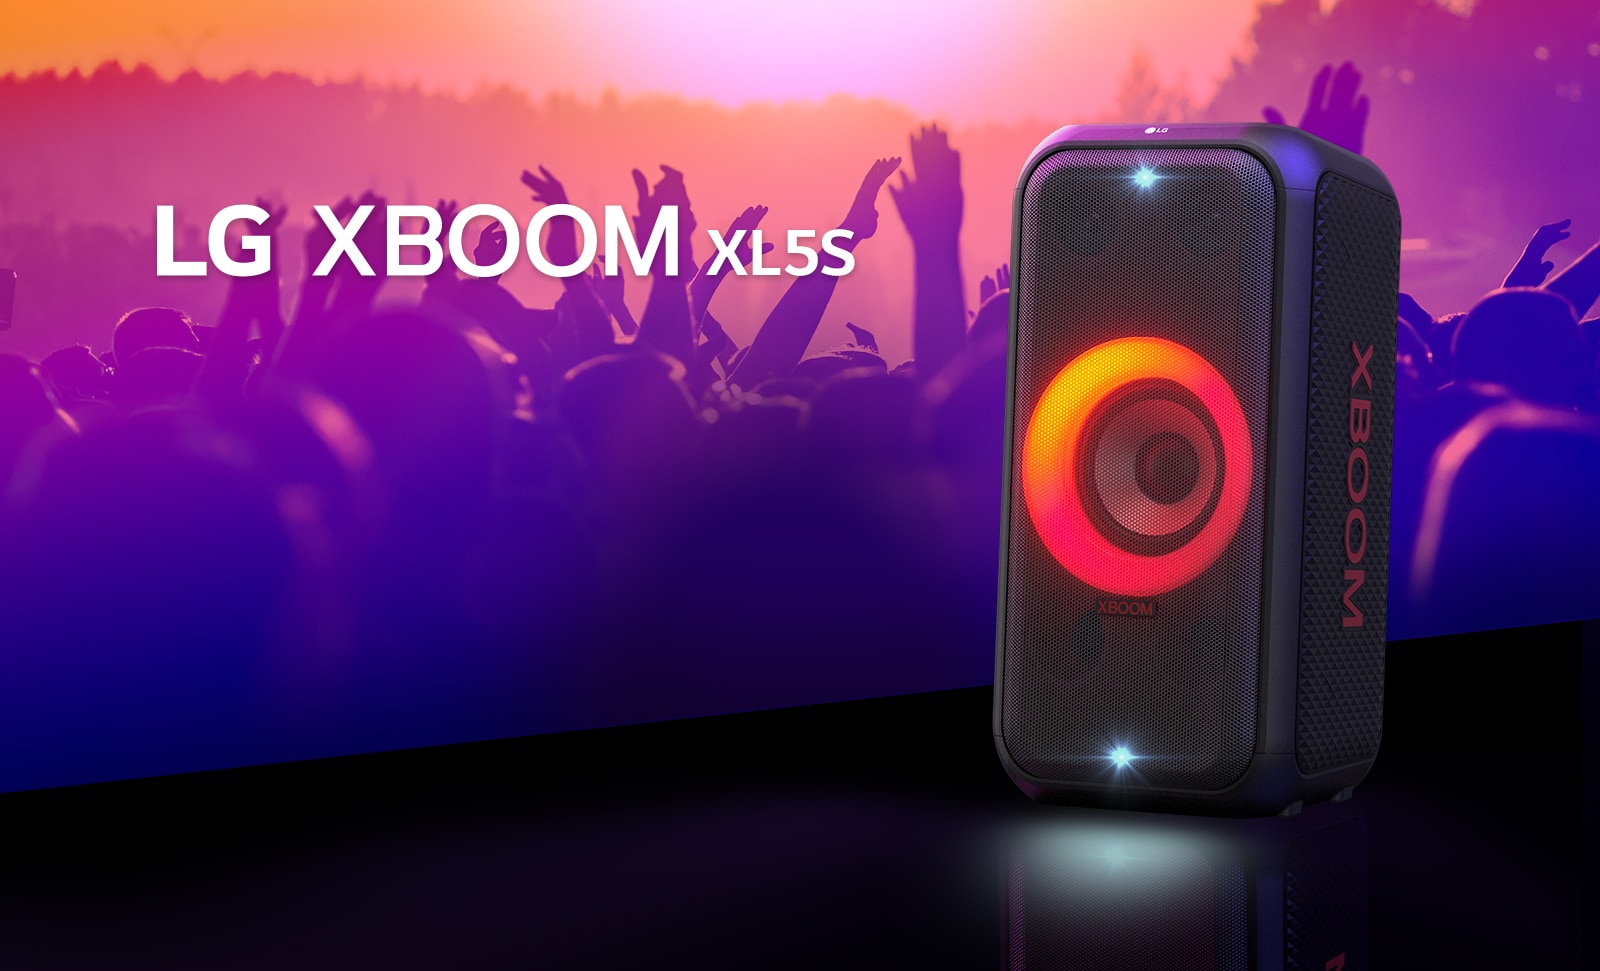 Piros-narancssárga színátmenetes fénnyel világító LG XBOOM Go XL5S egy színpadon. A színpad mögött emberek élvezik a zenét.